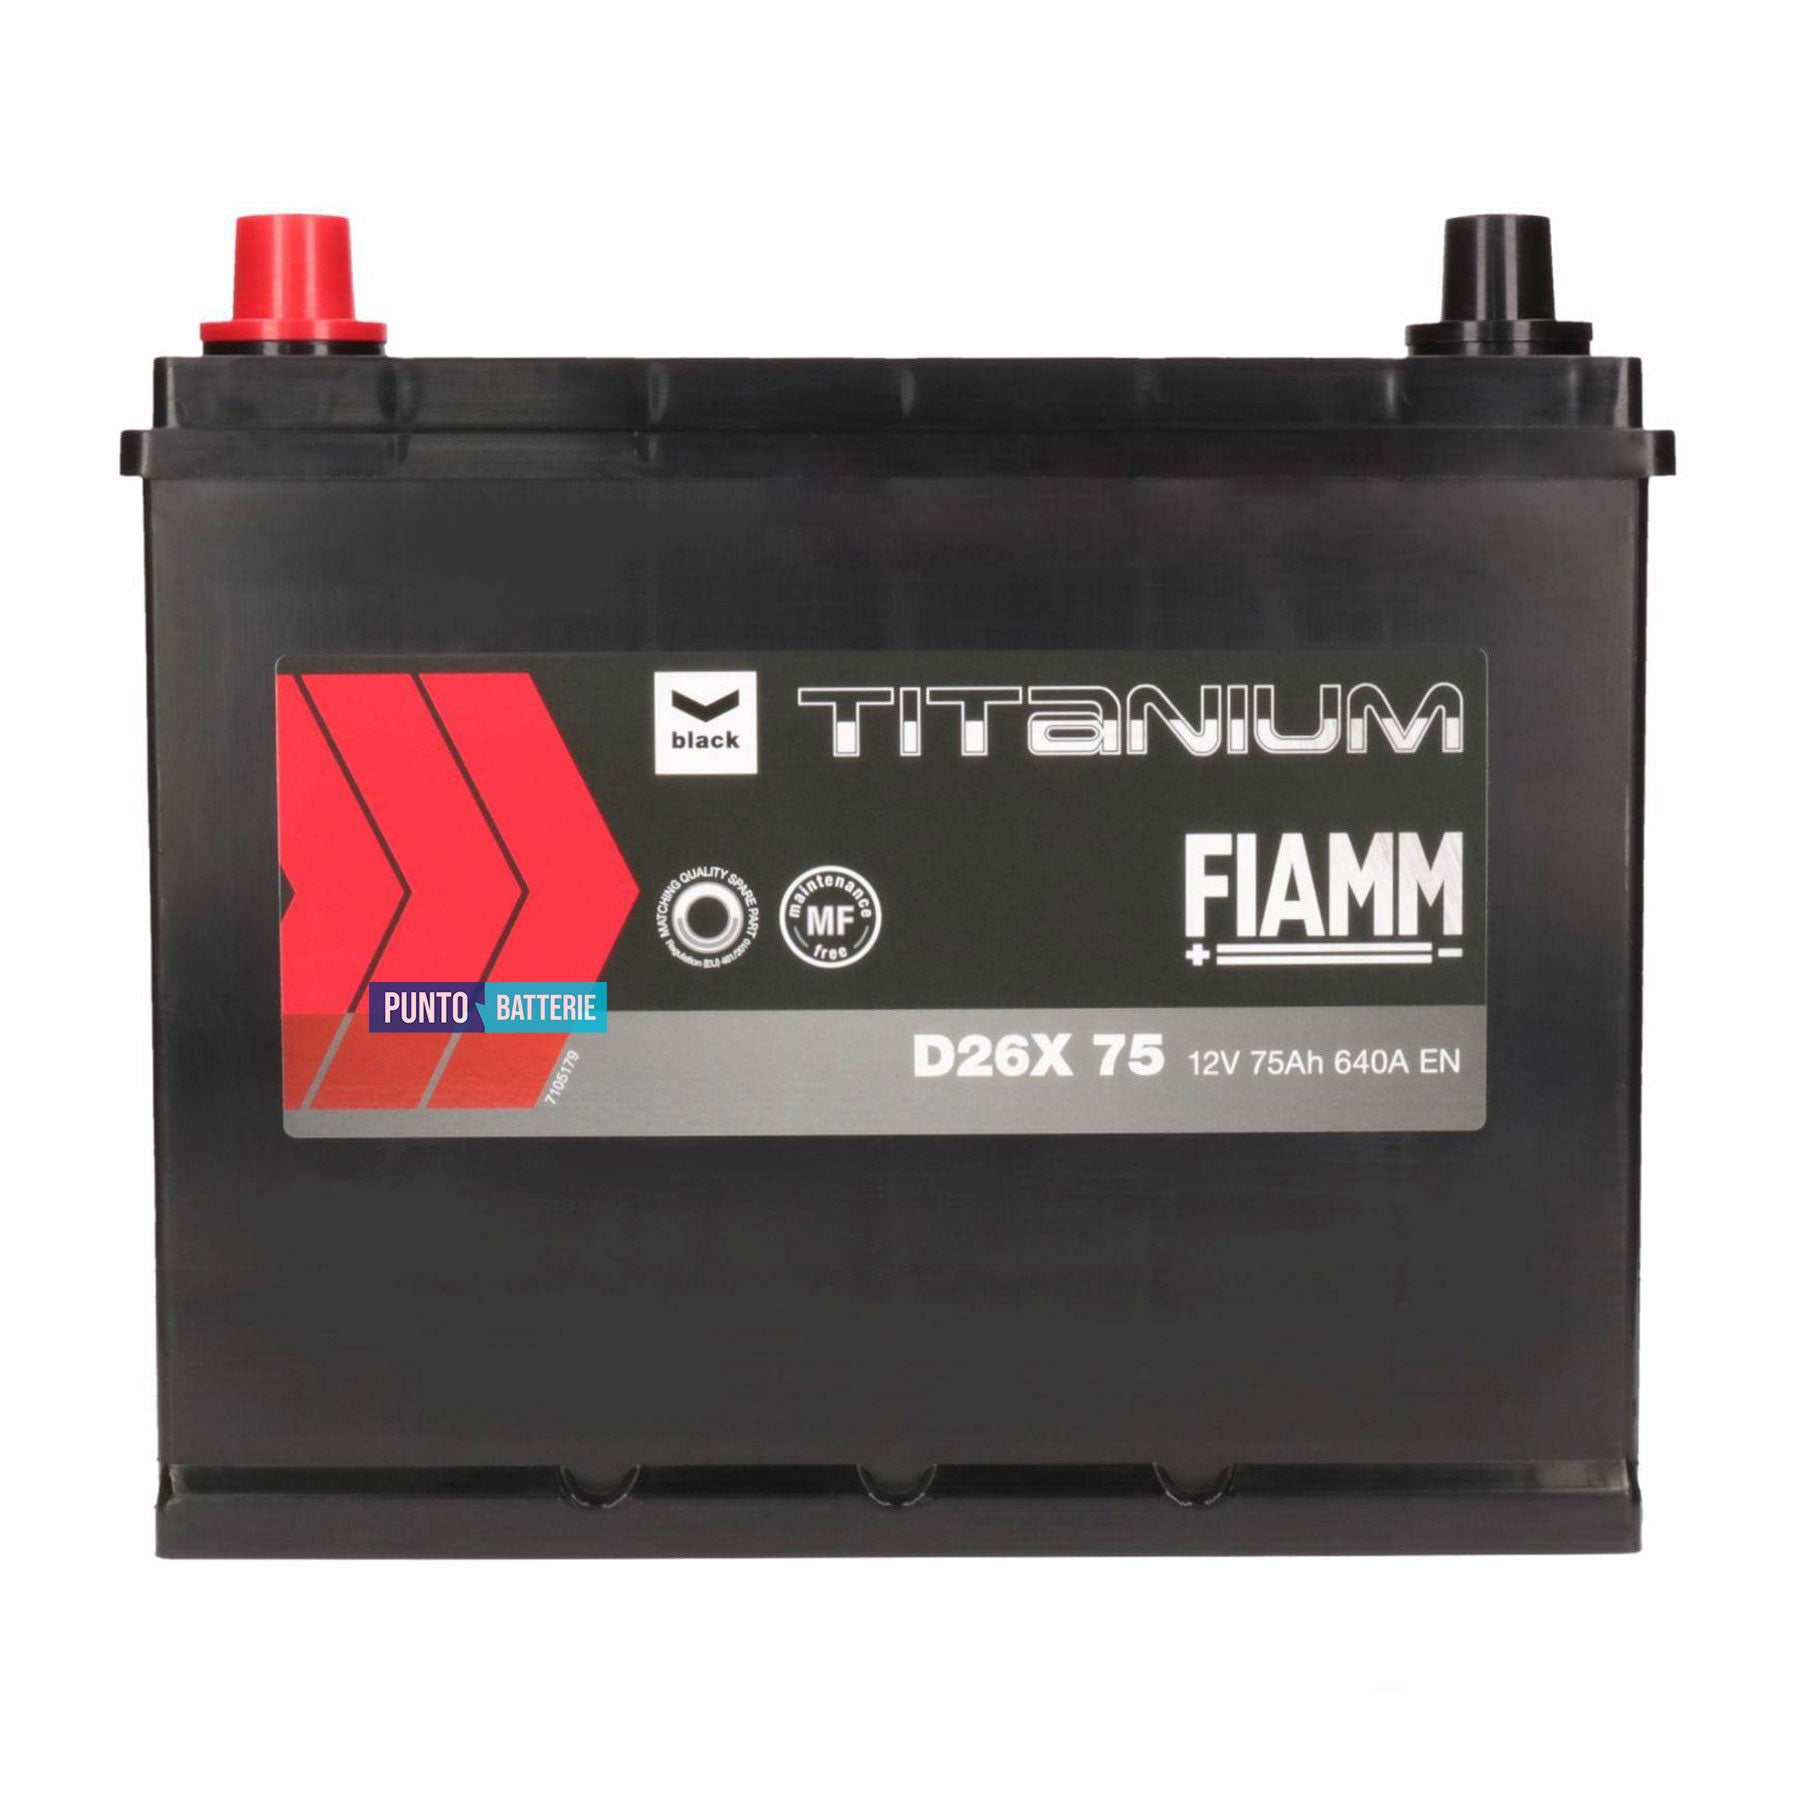 Batteria Fiamm 75Ah, 12V, 640A, 259x178x221mm